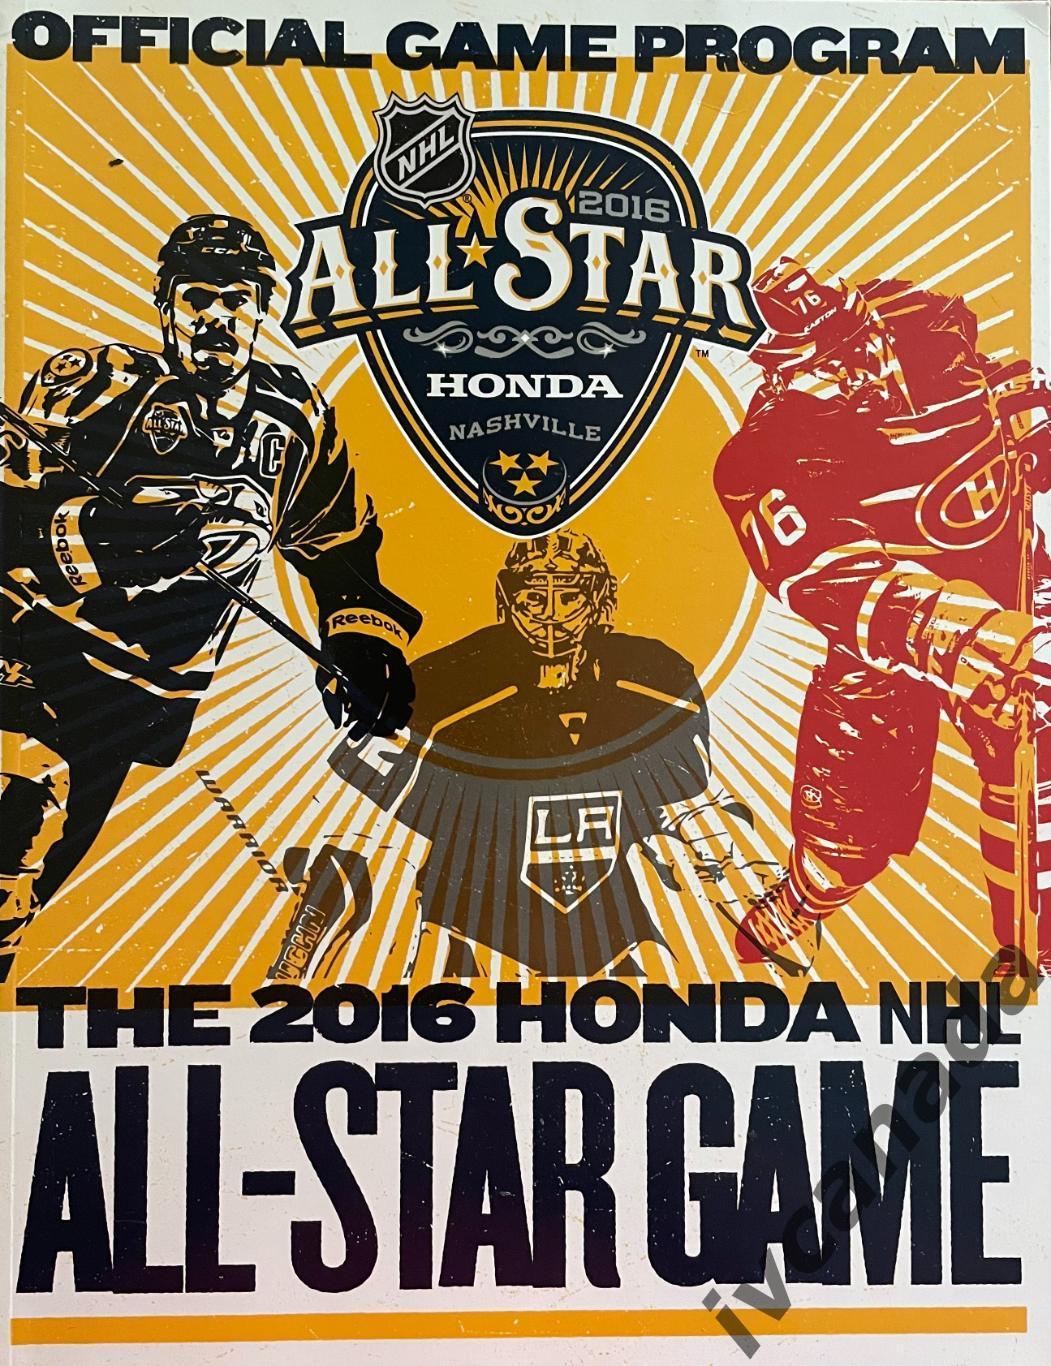 Матч всех звезд НХЛ 2016(ALL STAR GAME NHL). 31 января 2016 г. Нашвилл, США